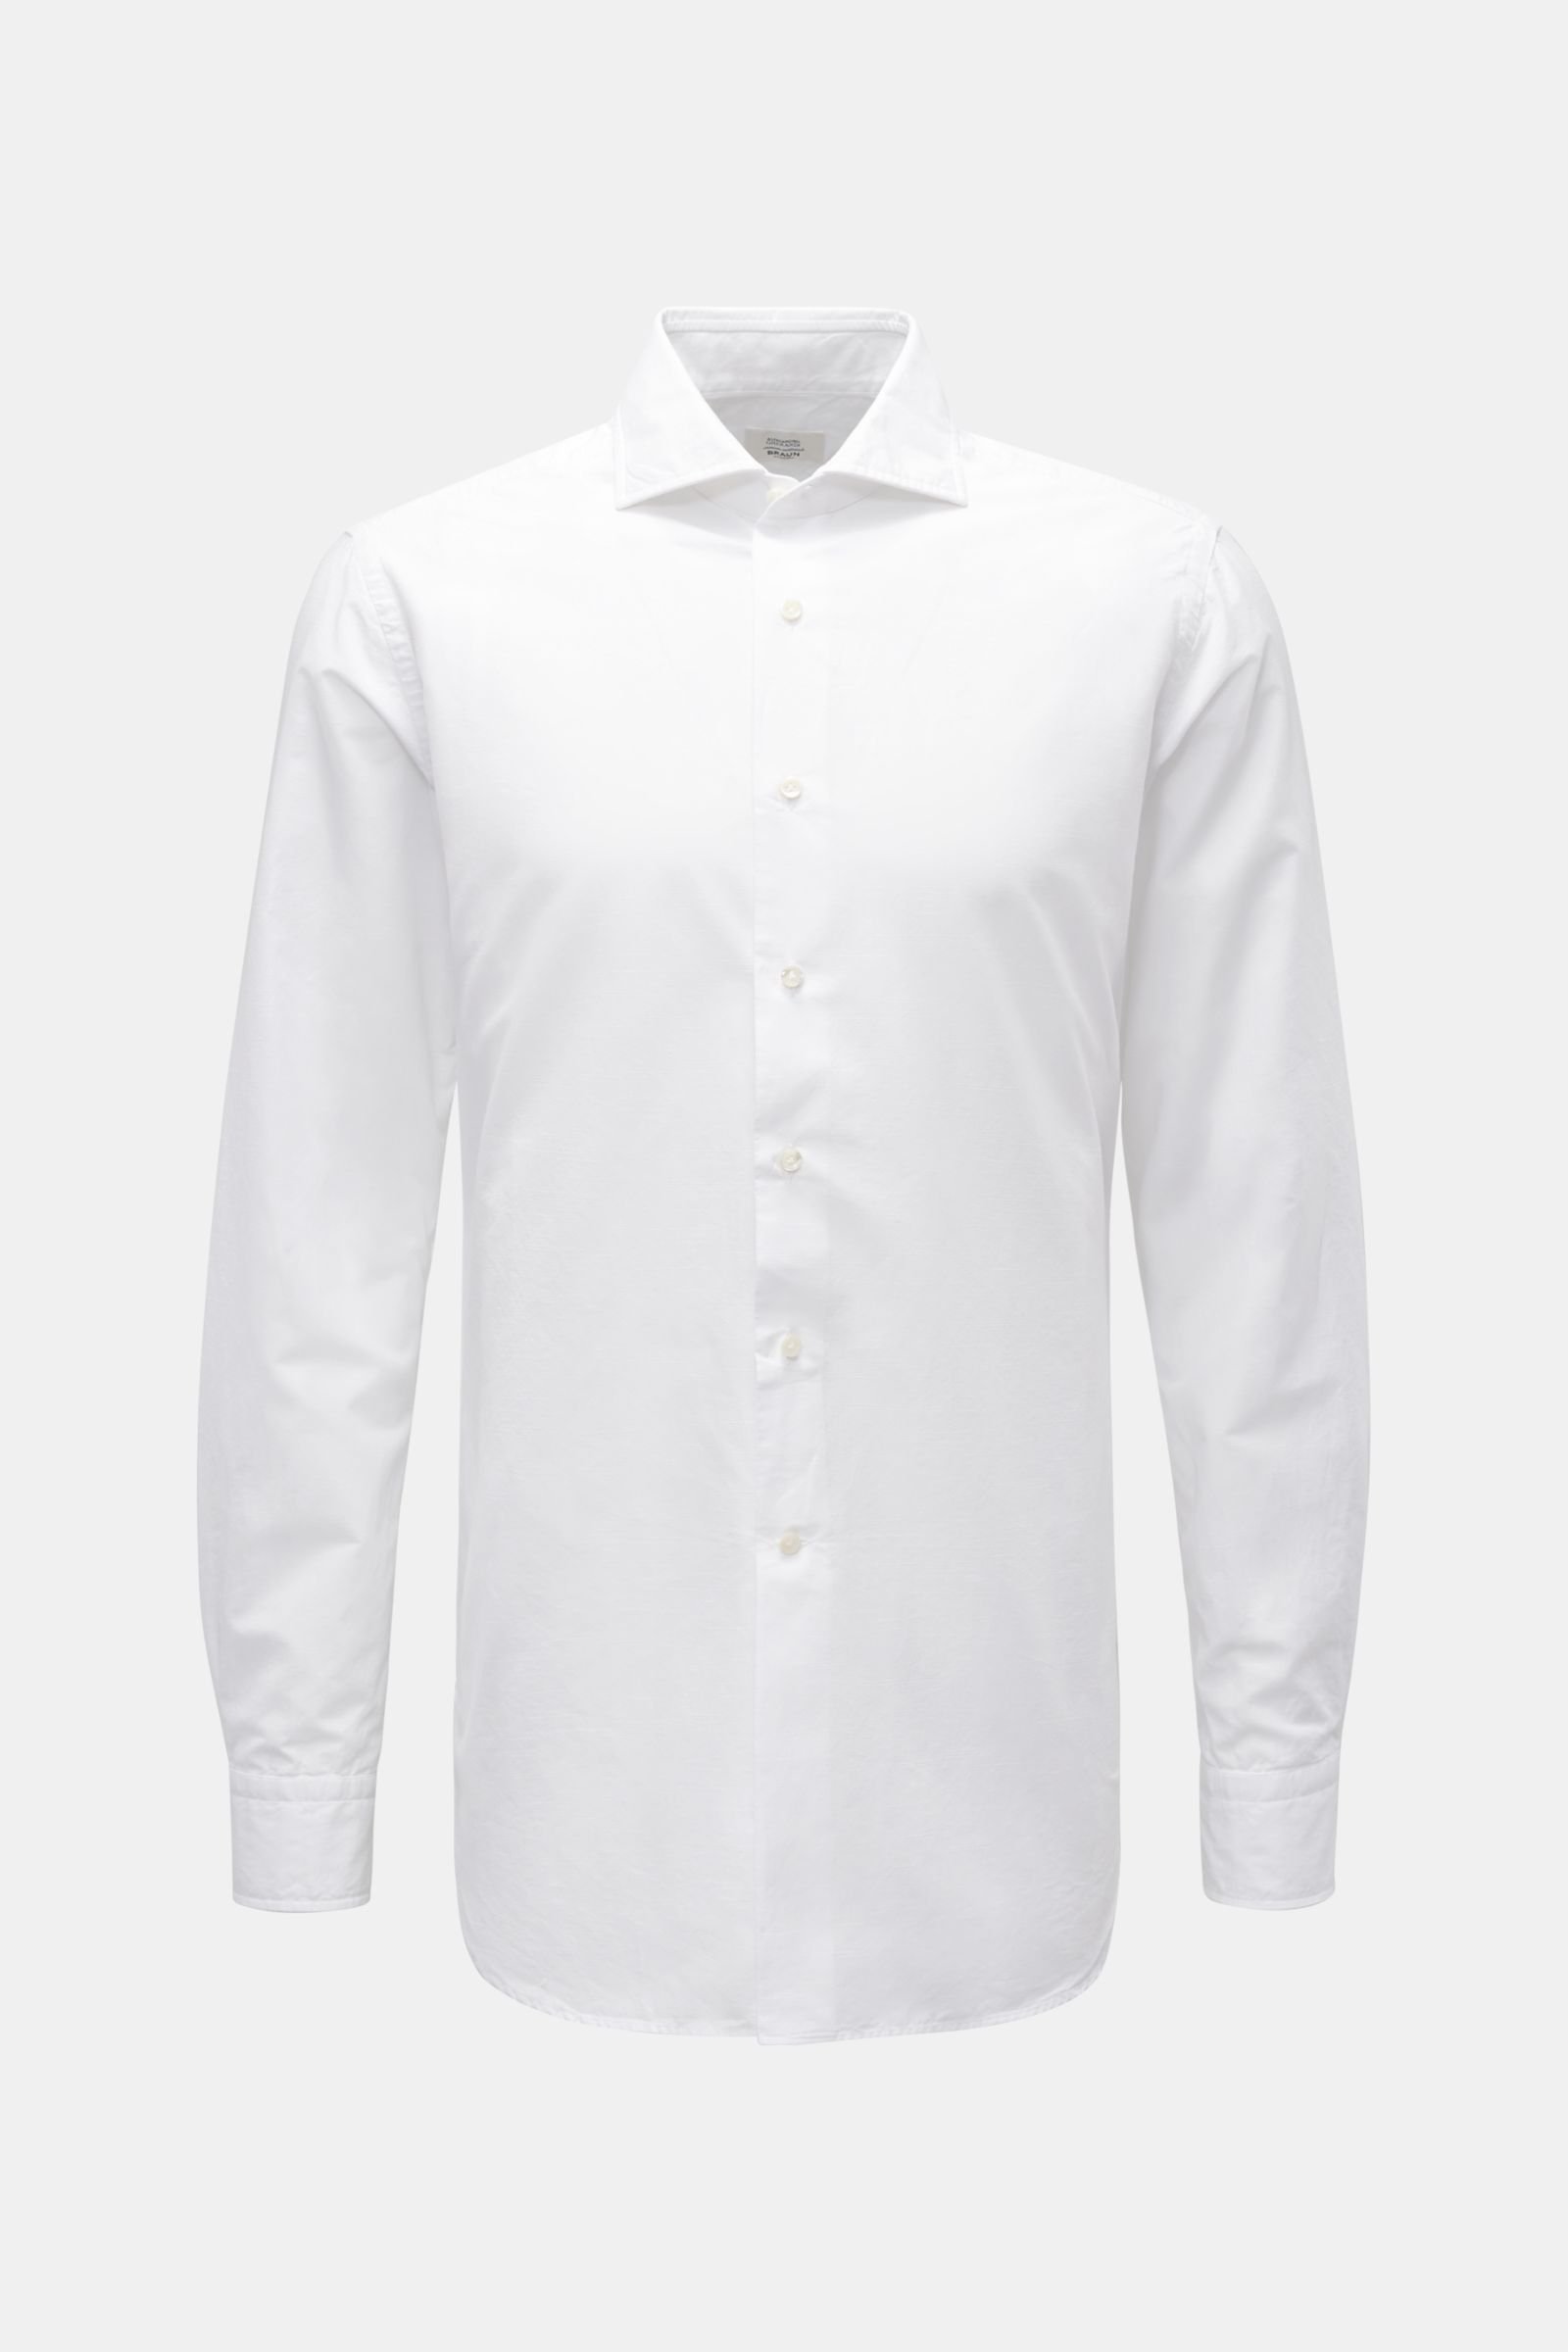 Casual shirt shark collar white